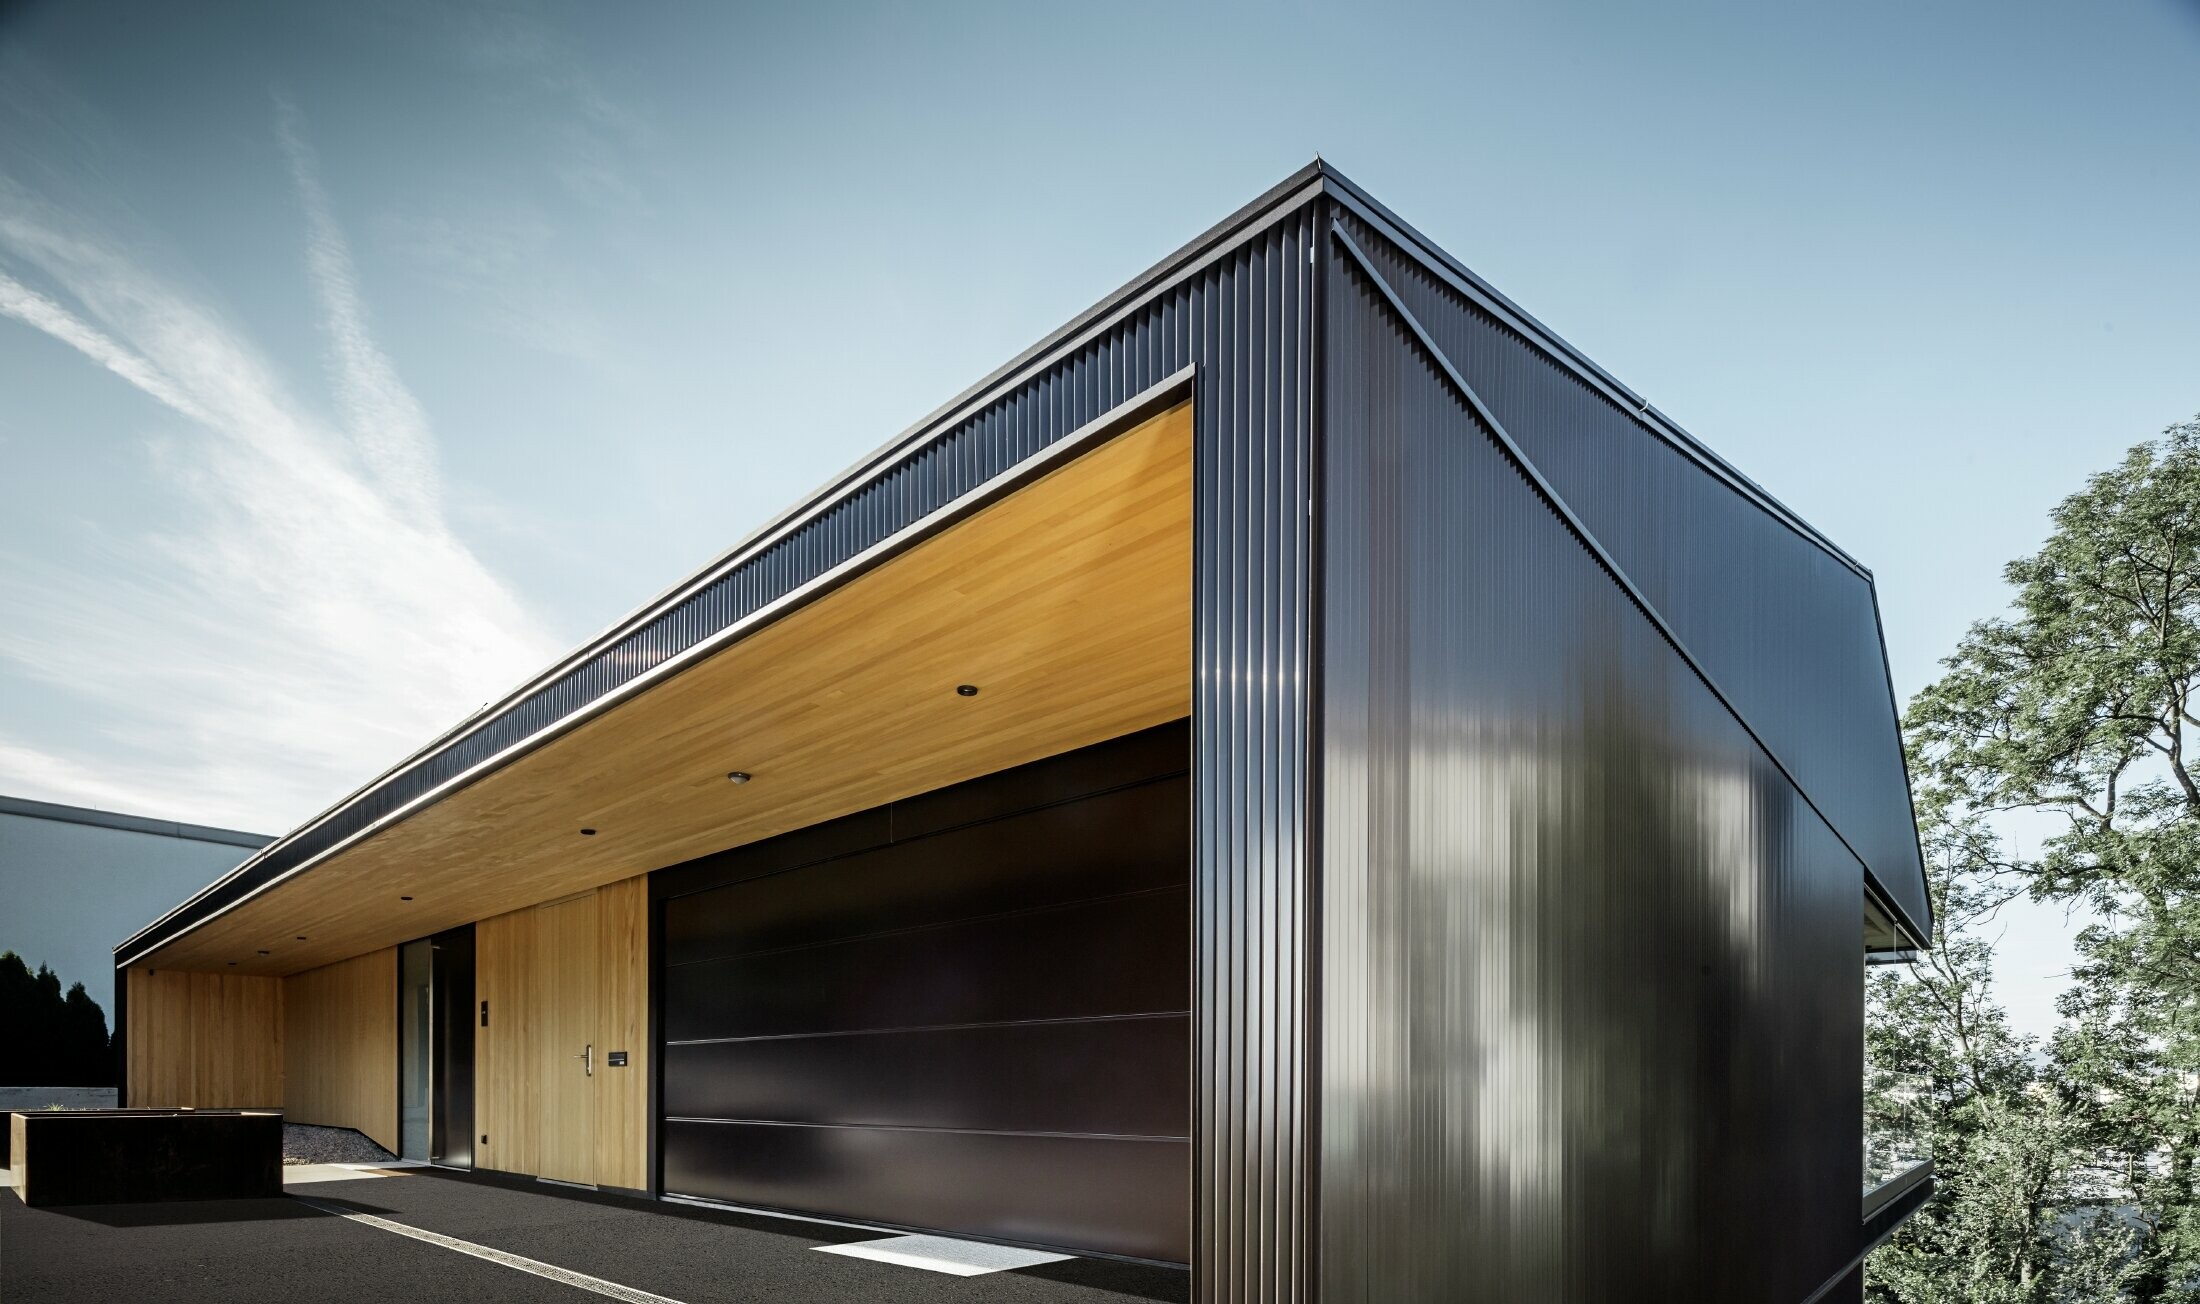 Ulaz u garažu obiteljske kuće, fasada je obložena PREFA zupčastim profilom u tamno smeđoj. 